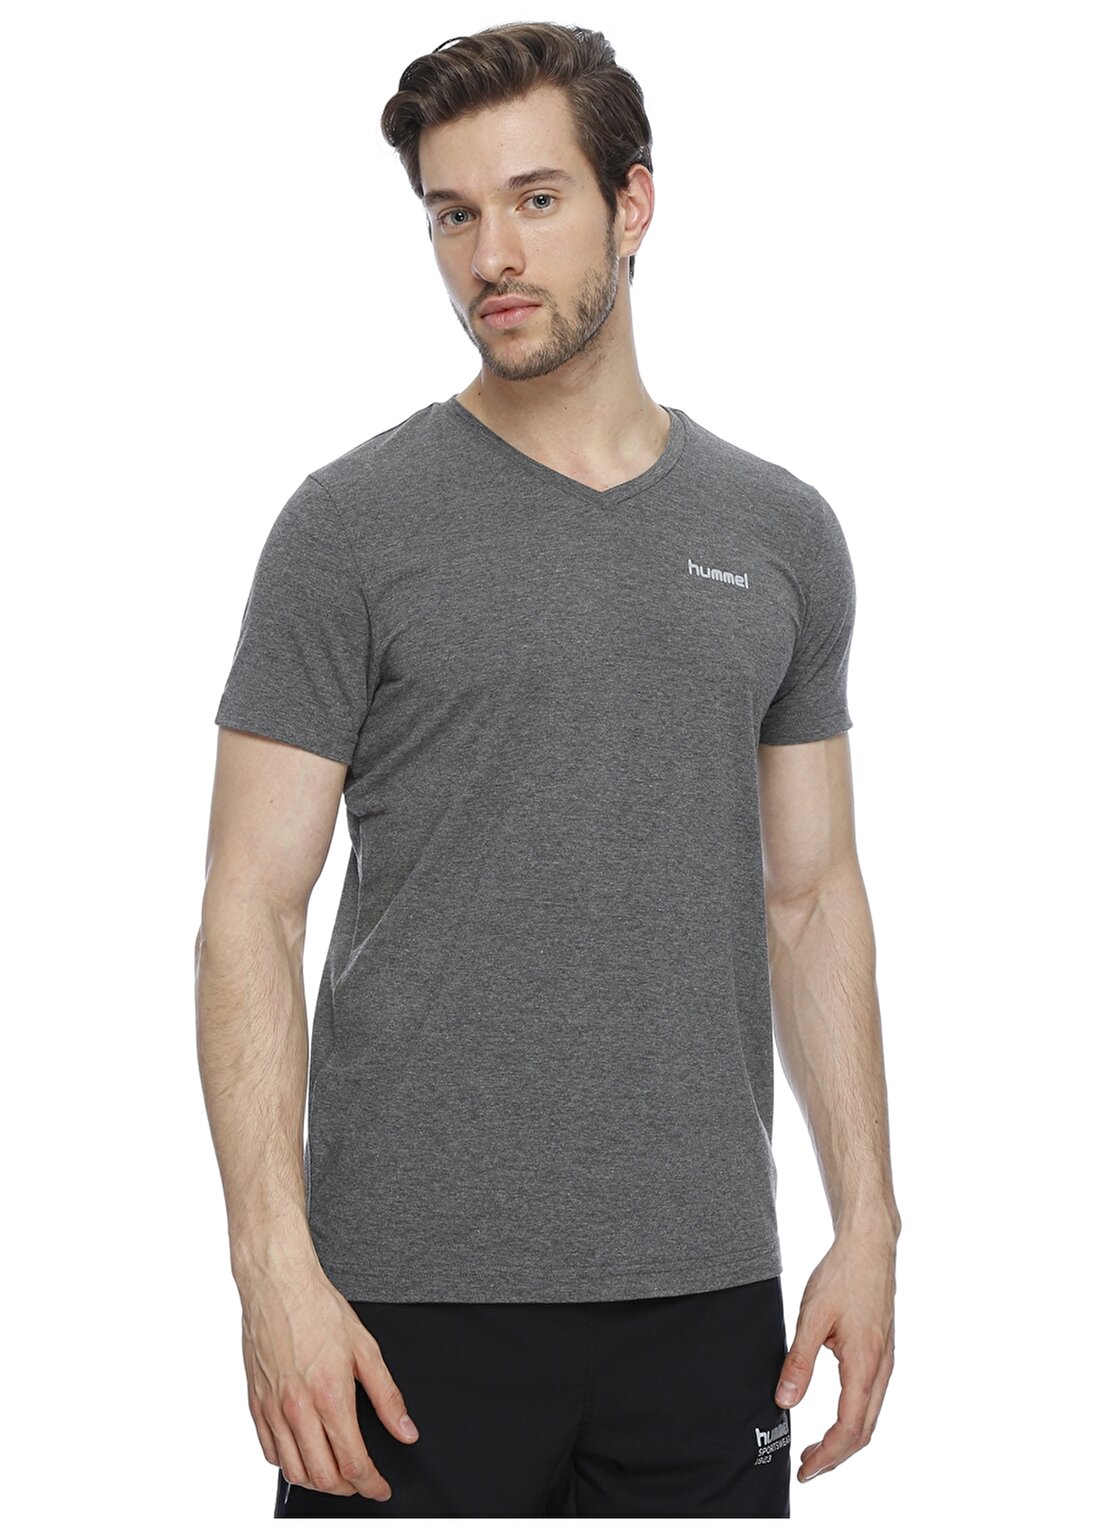 Hummel PETER Füme Melanj Erkek T-Shirt T09005-2800